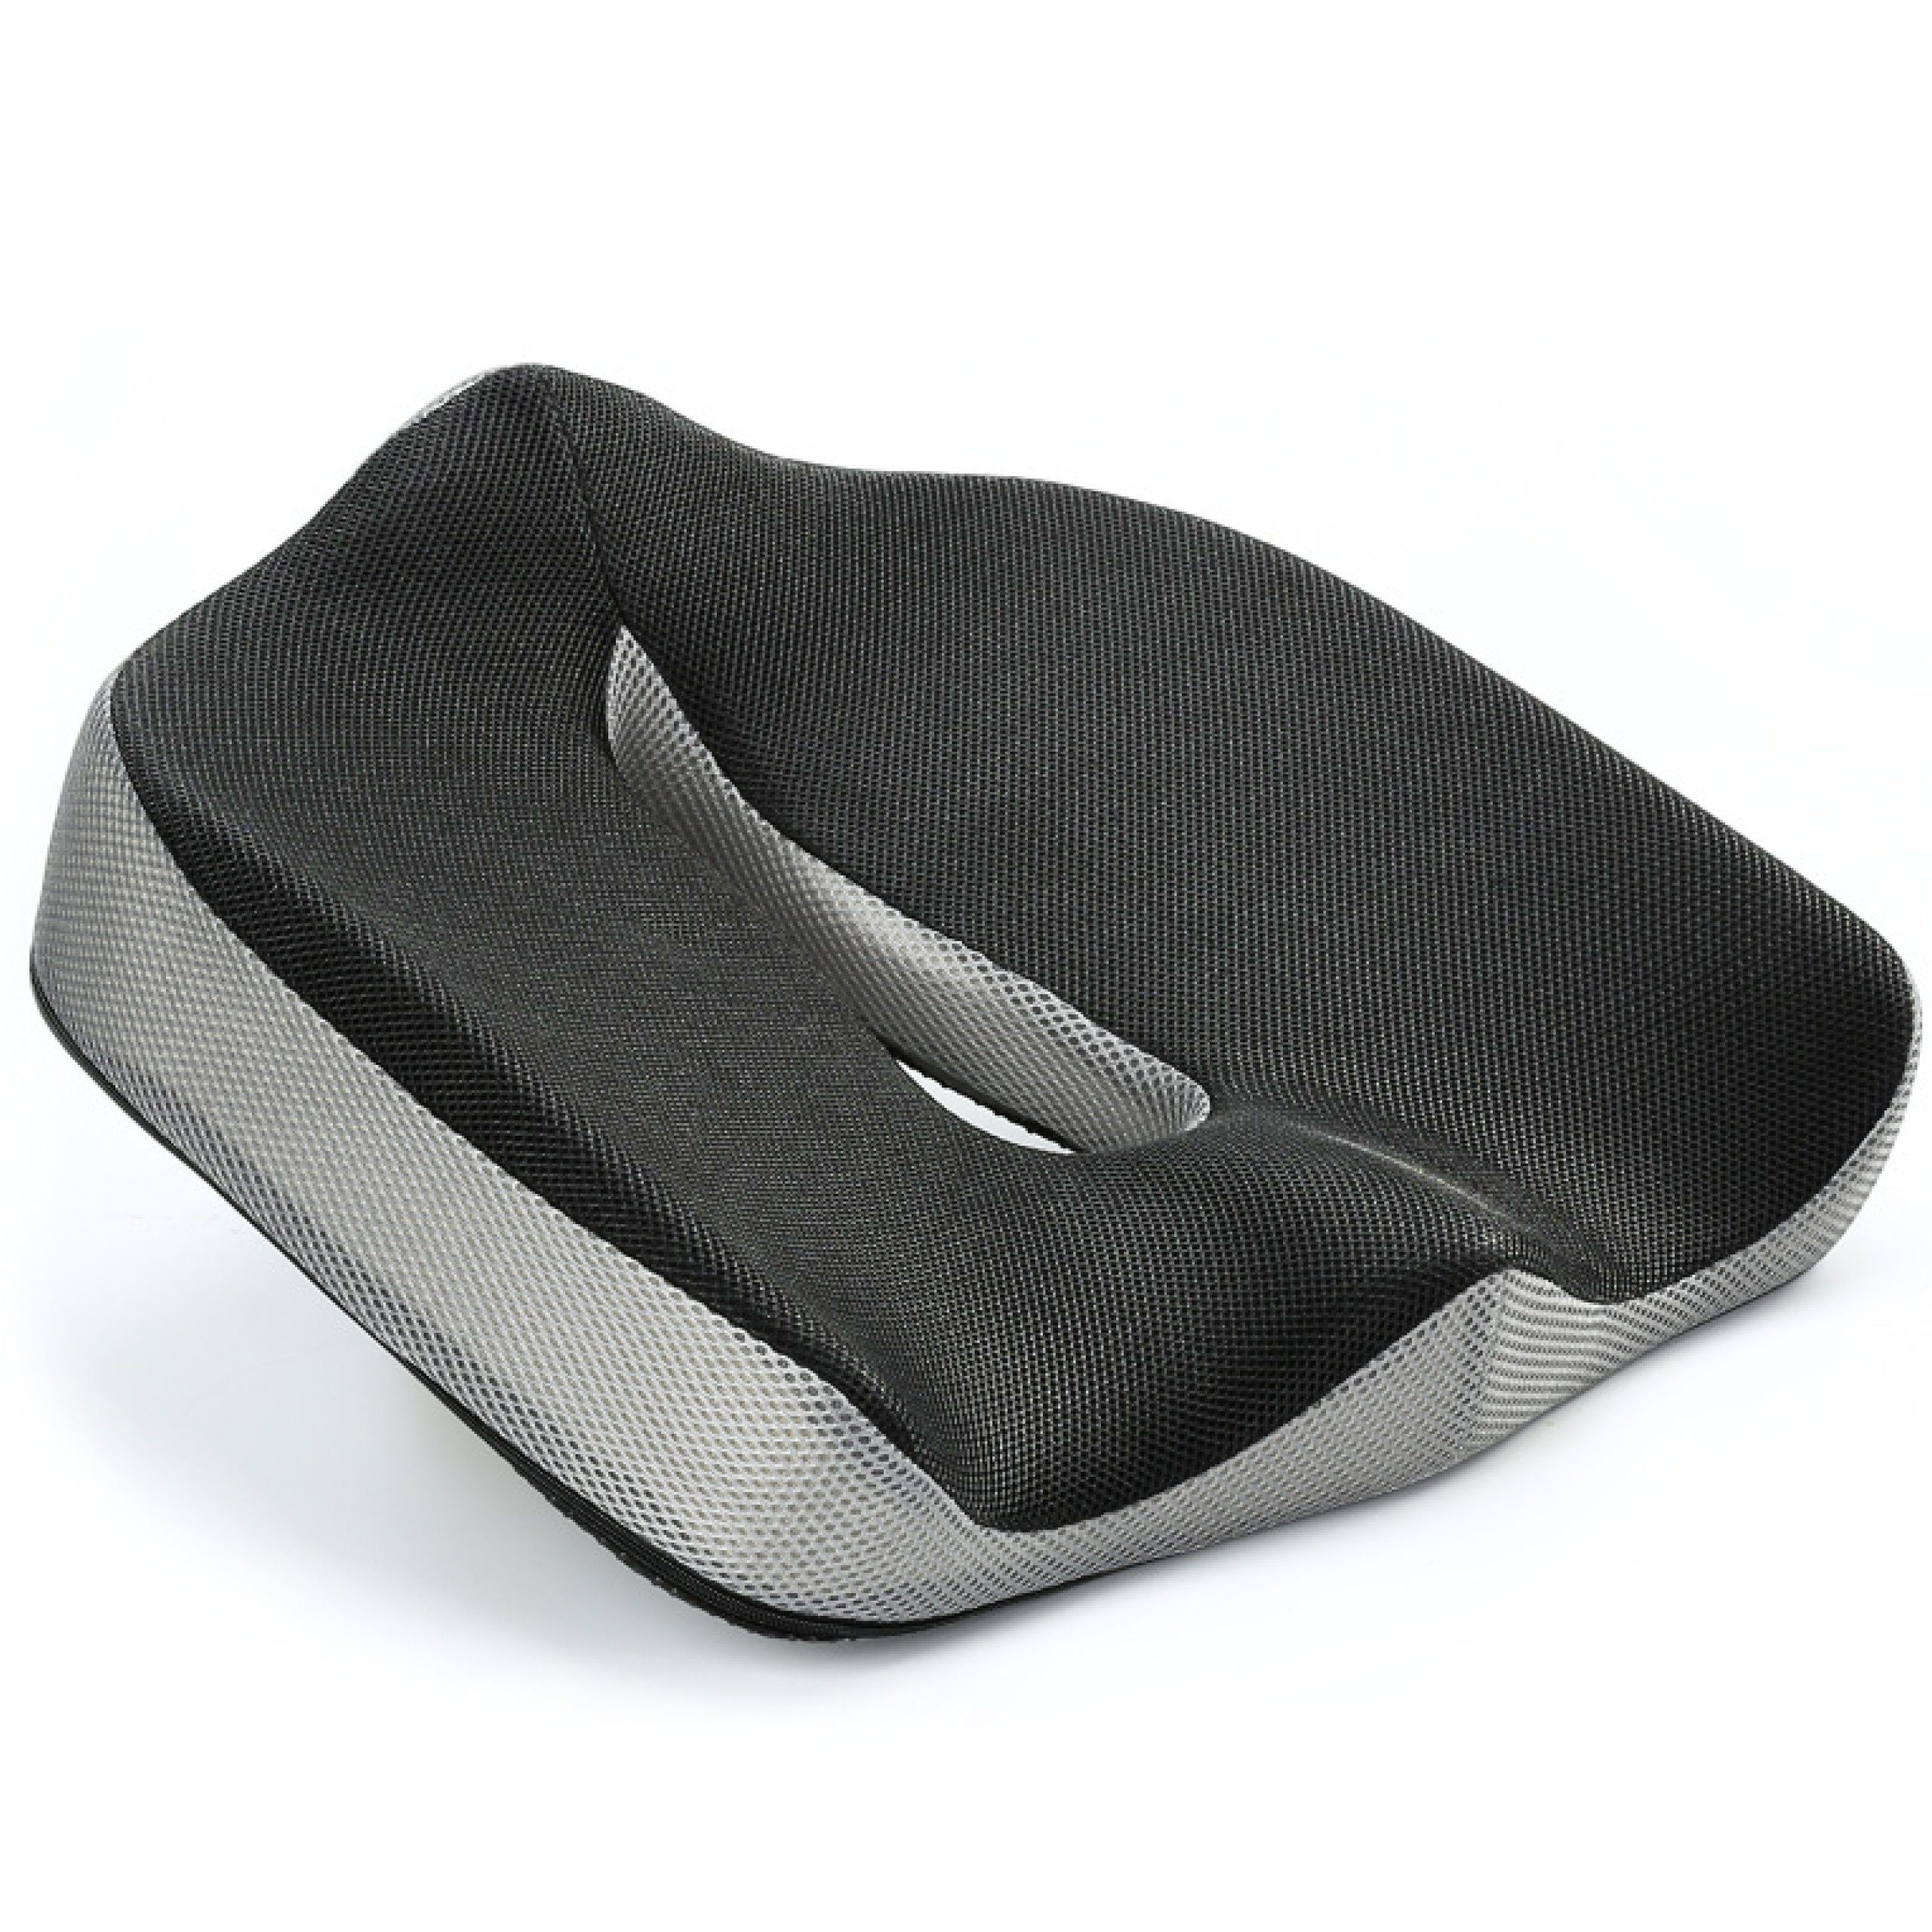 Sitzkissen in I I schwarz-grau O-Form Vitabo ergonomisch Viscoschaum Sitzdonut aus Steißbeinkissen Sitzring Memory-Funktion geformtes mit Vitabo